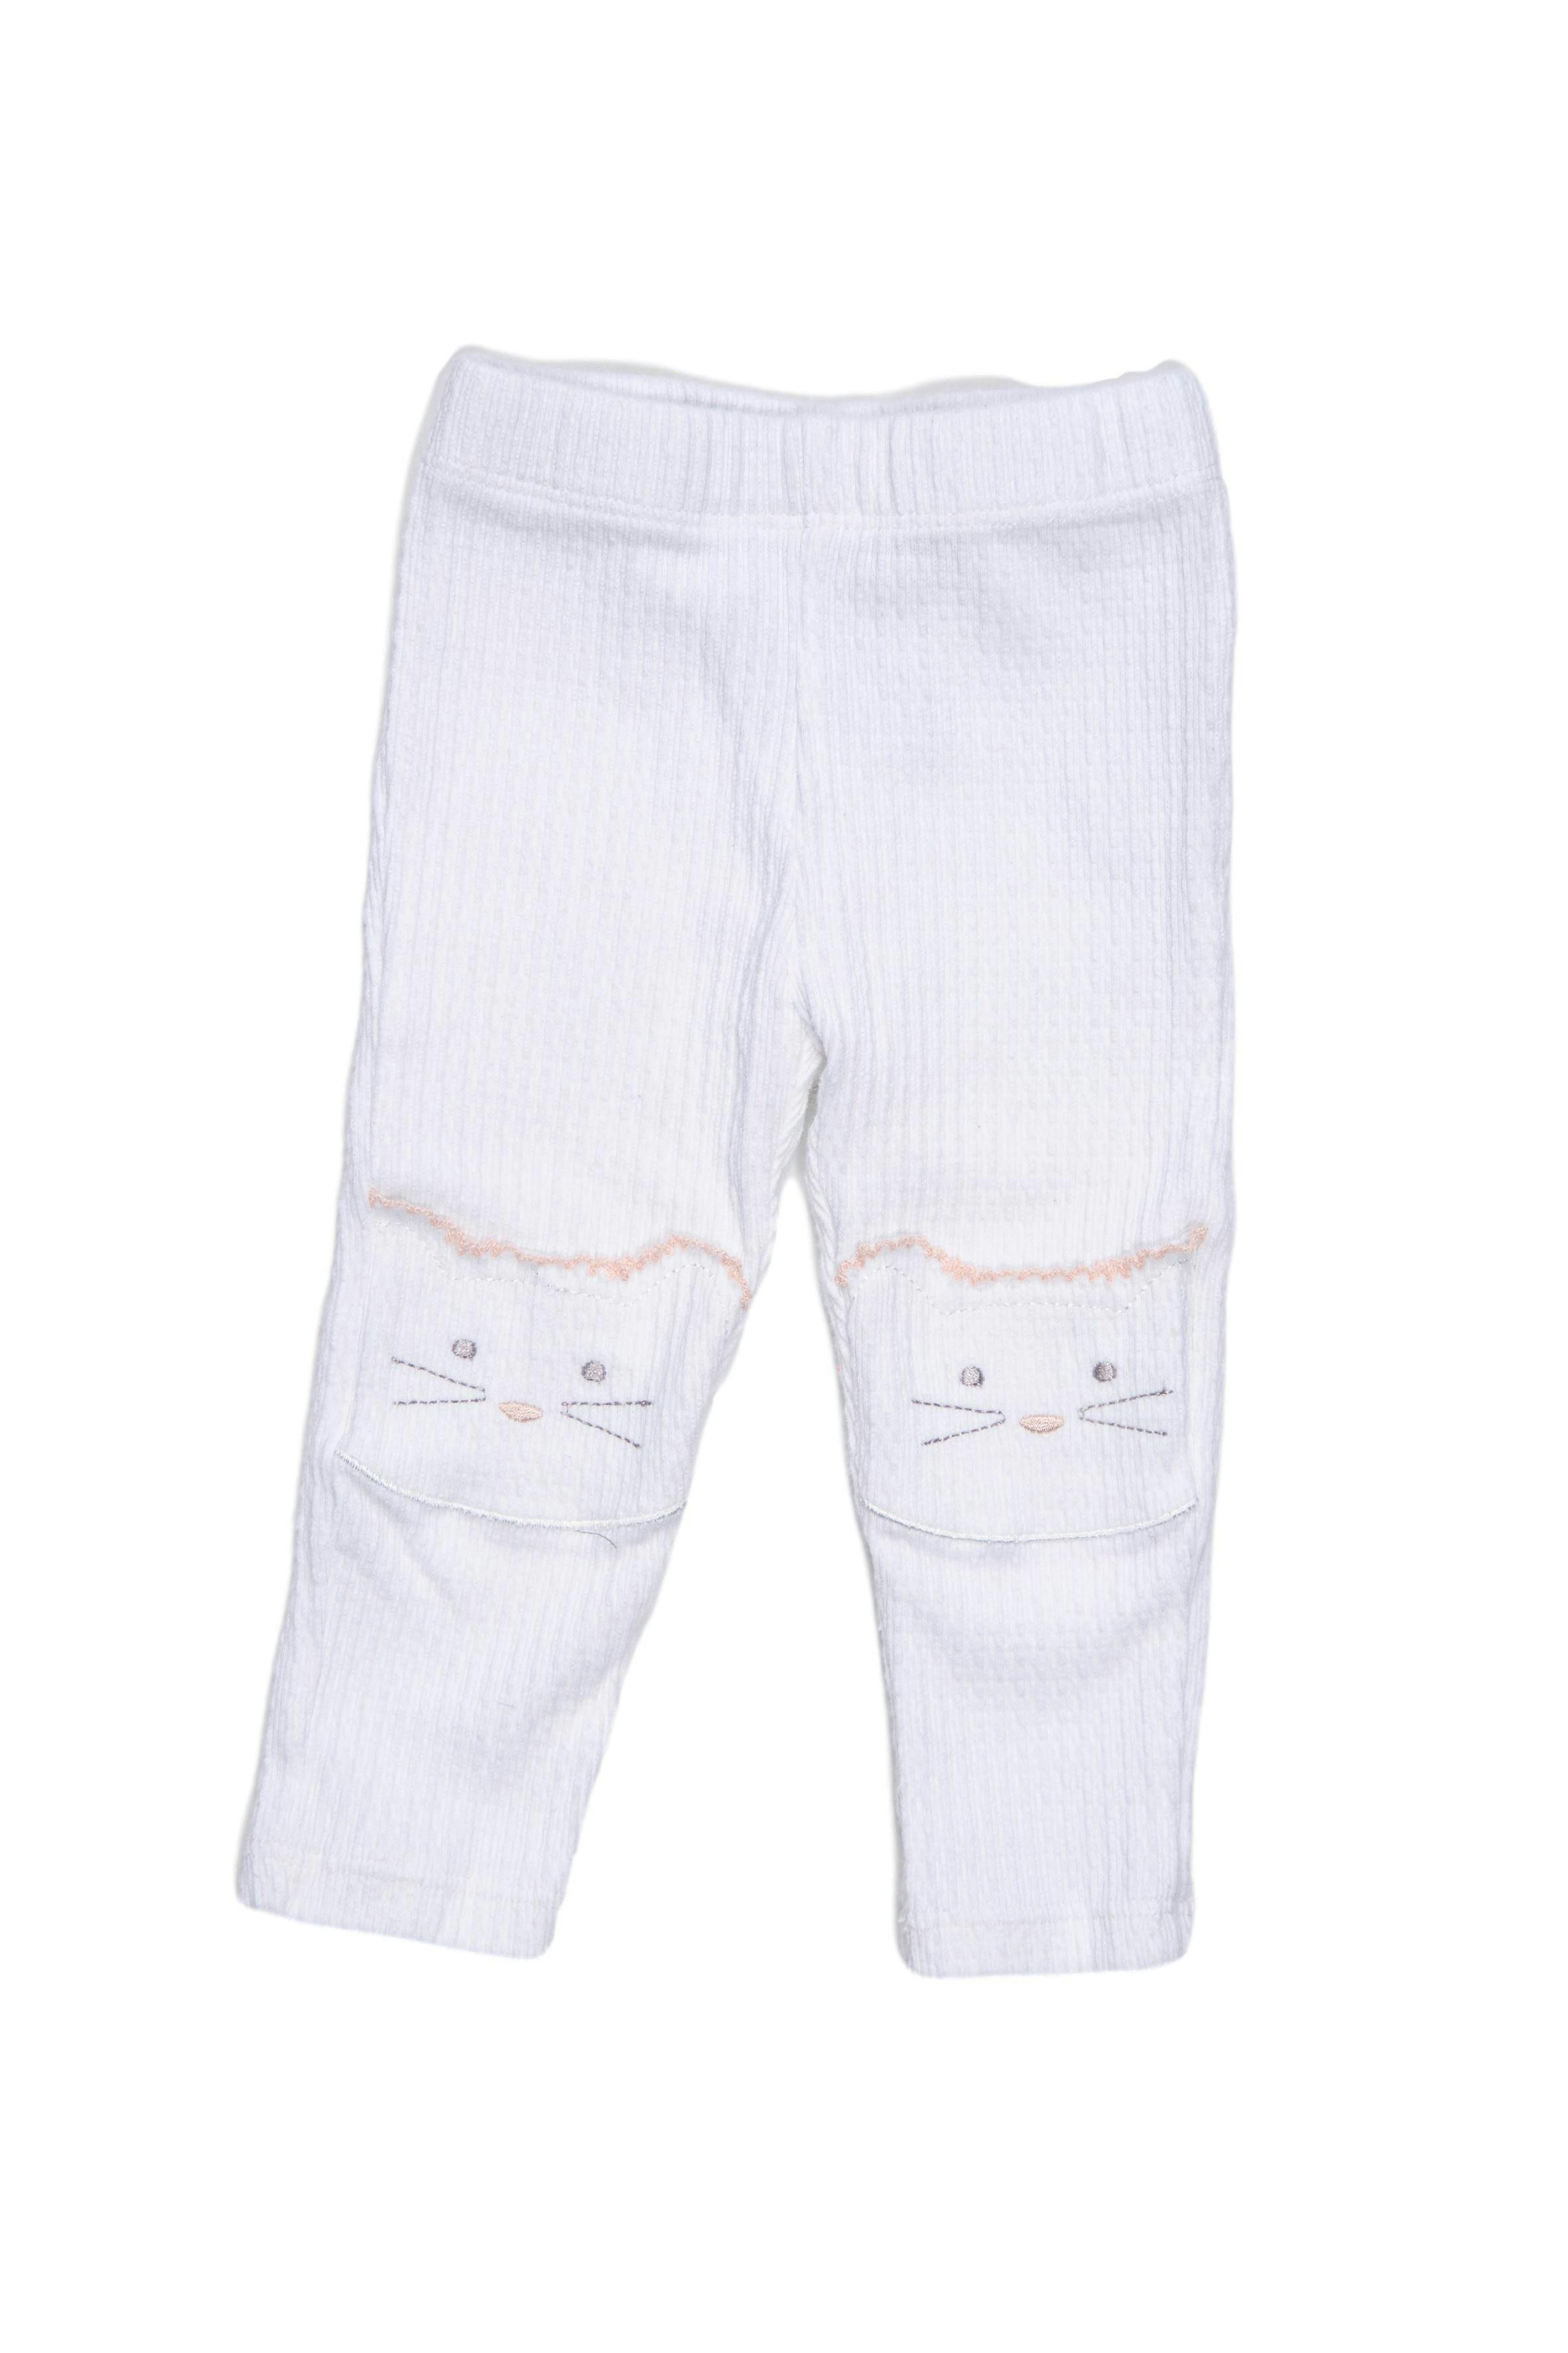 Legging crema, tela texturada con rodilleras de gato, 96% algodón y 4% spandex - Tjx Europe